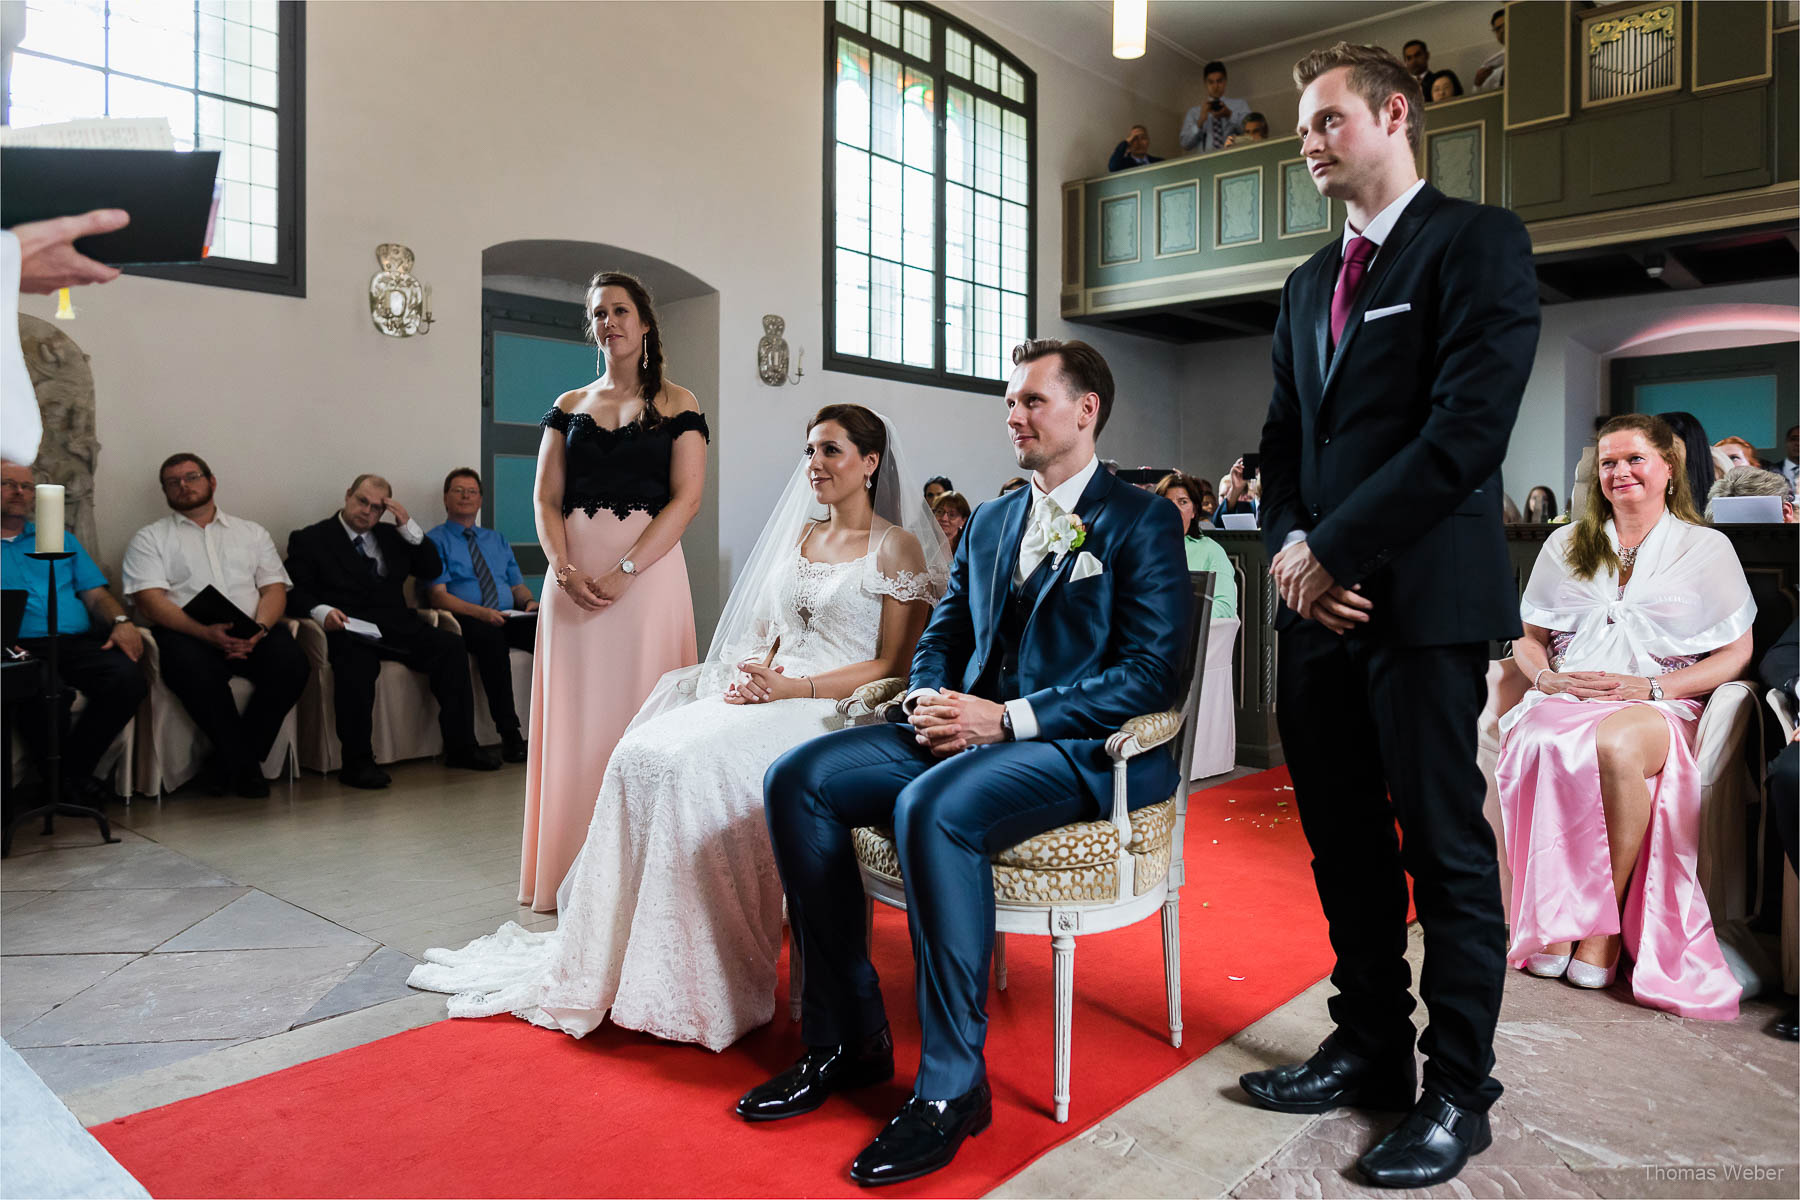 Schlosshochzeit in Norddeutschland, Hochzeitsfotograf Thomas Weber aus Ostfriesland